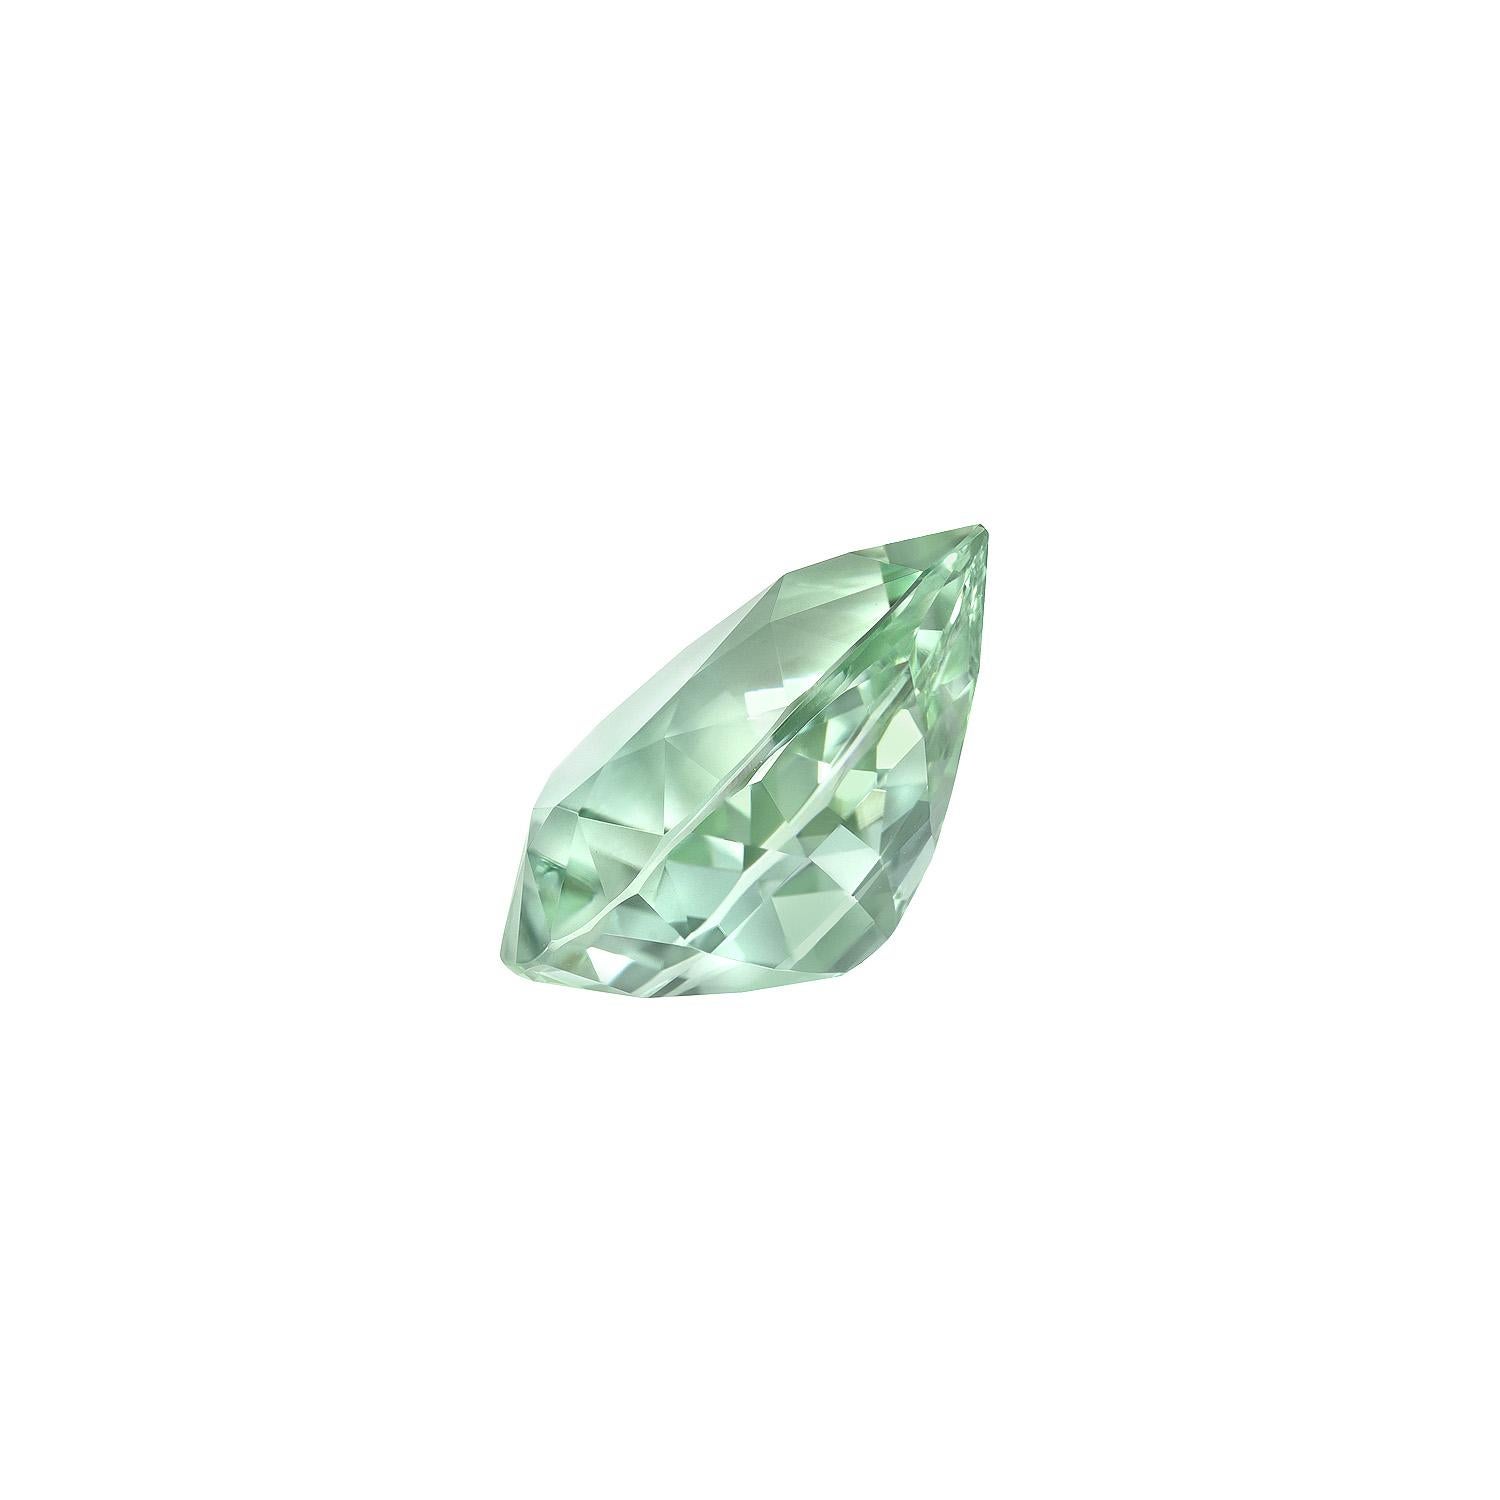 light green semi precious stone